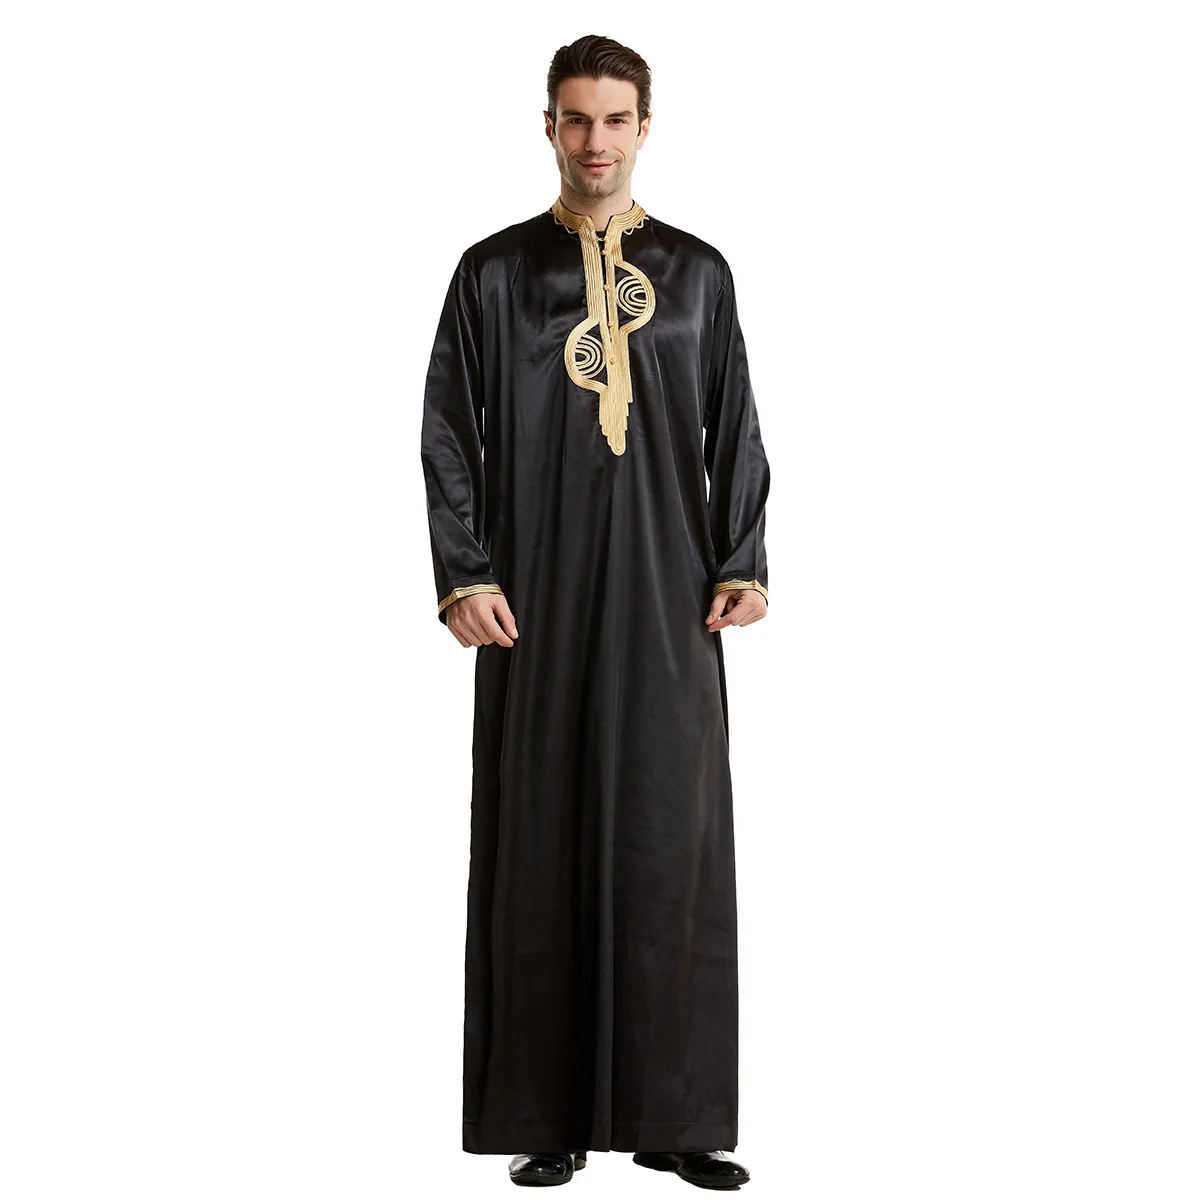 Мусульманские мужчины джубба Тюбе Исламская одежда стенд воротник кимоно длинный халат Саудовская мусулман одежда Кафтан абайя джубба Дуб... от AliExpress RU&CIS NEW